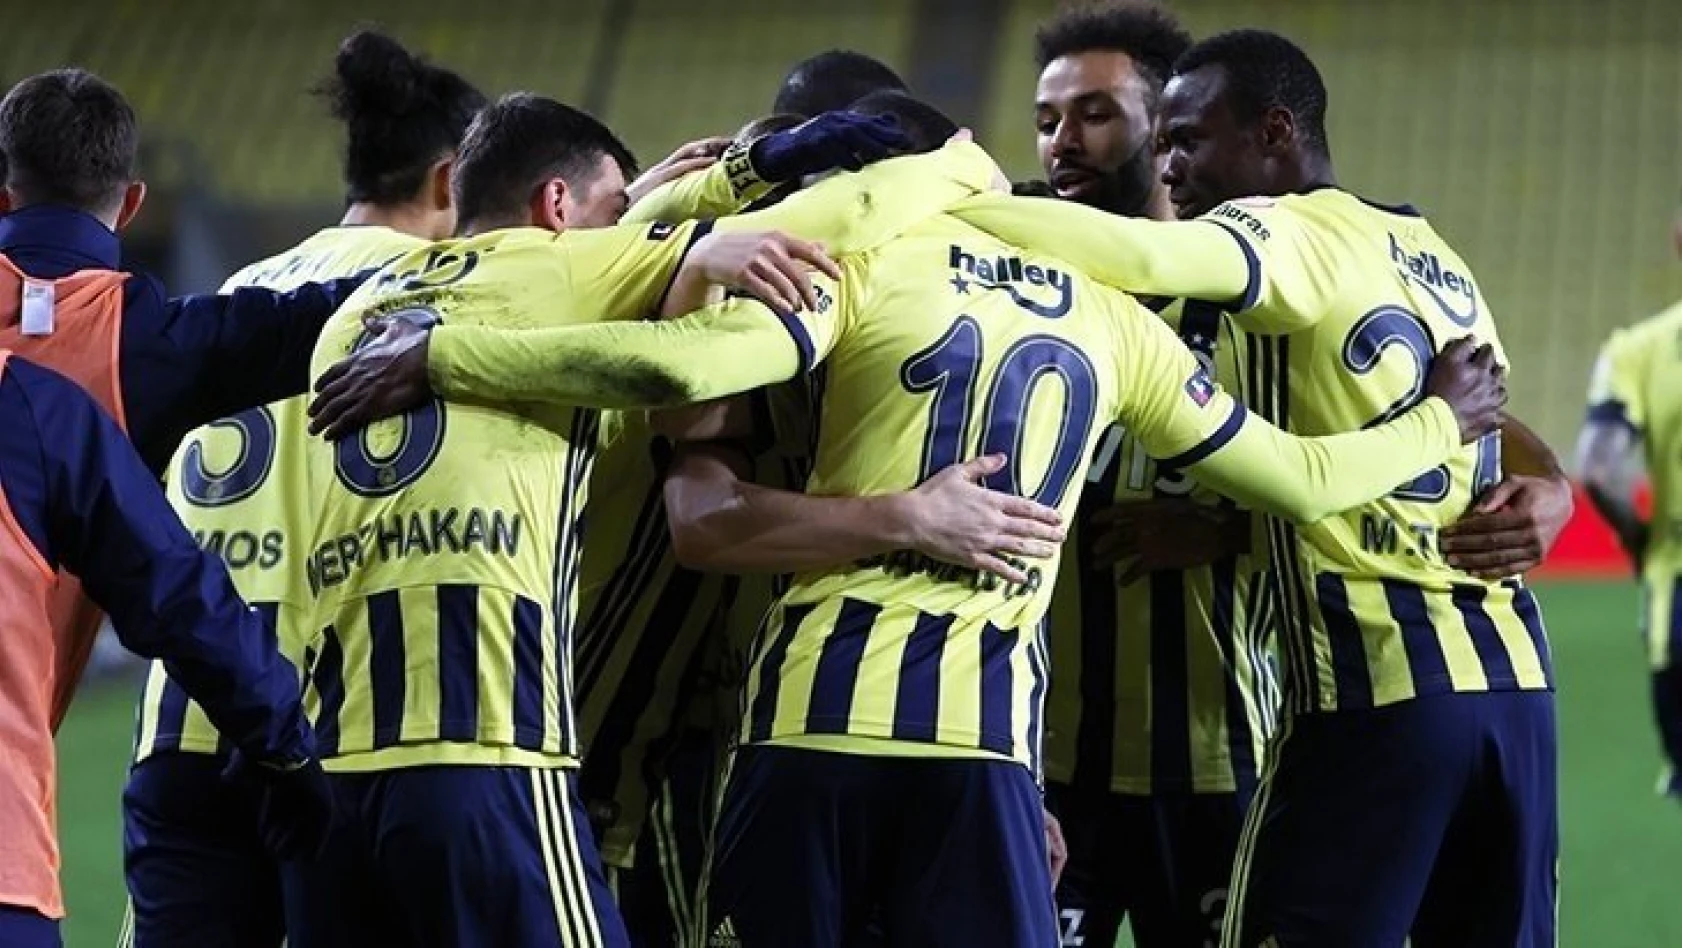 Fenerbahçe, Ziraat Türkiye Kupası'nda çeyrek finale yükseldi